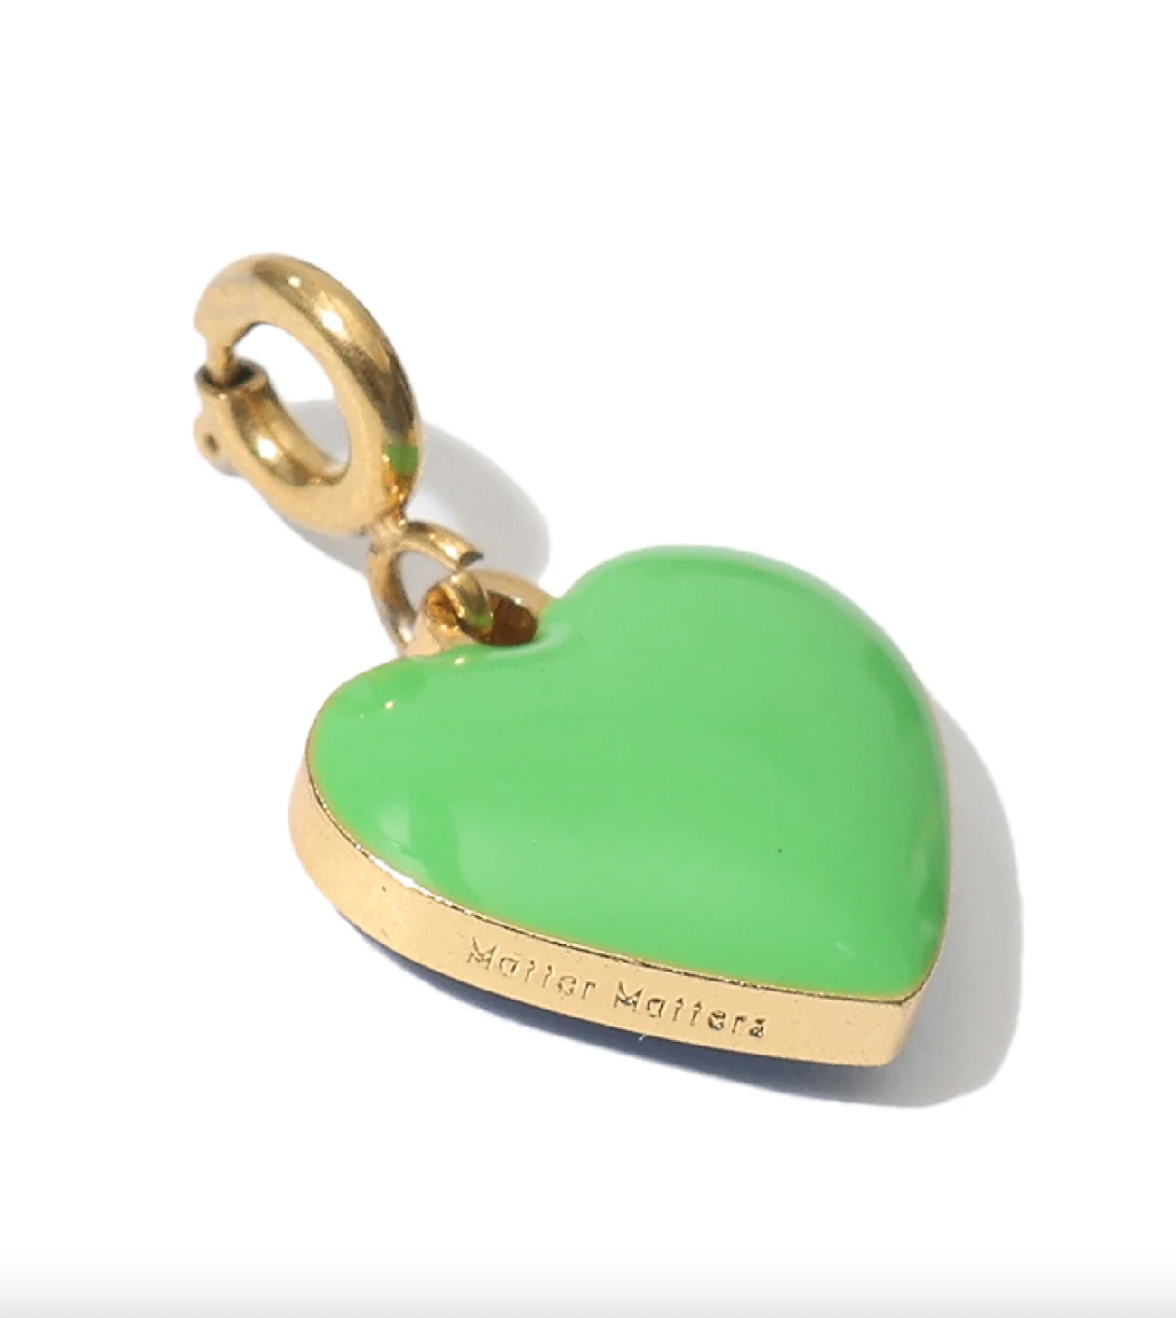 Matter Matters Humble Heart Necklace • Green & Cobalt